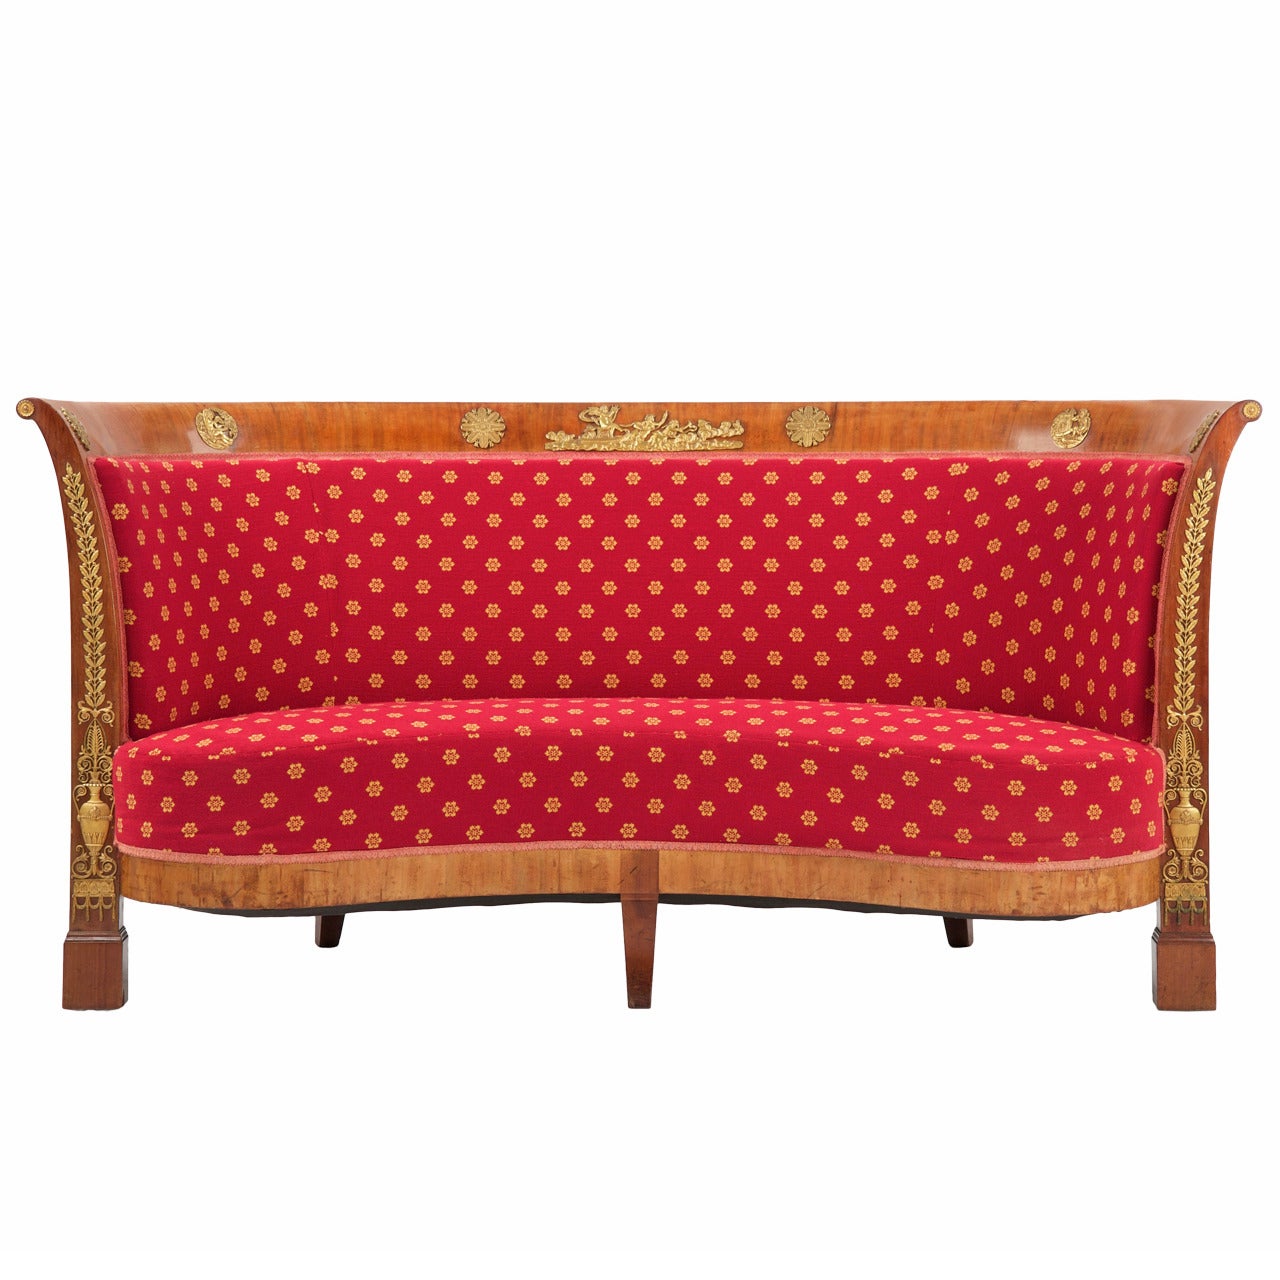 French Napoleon III Mahogany Antique Sofa Canapé Settee, circa 1860